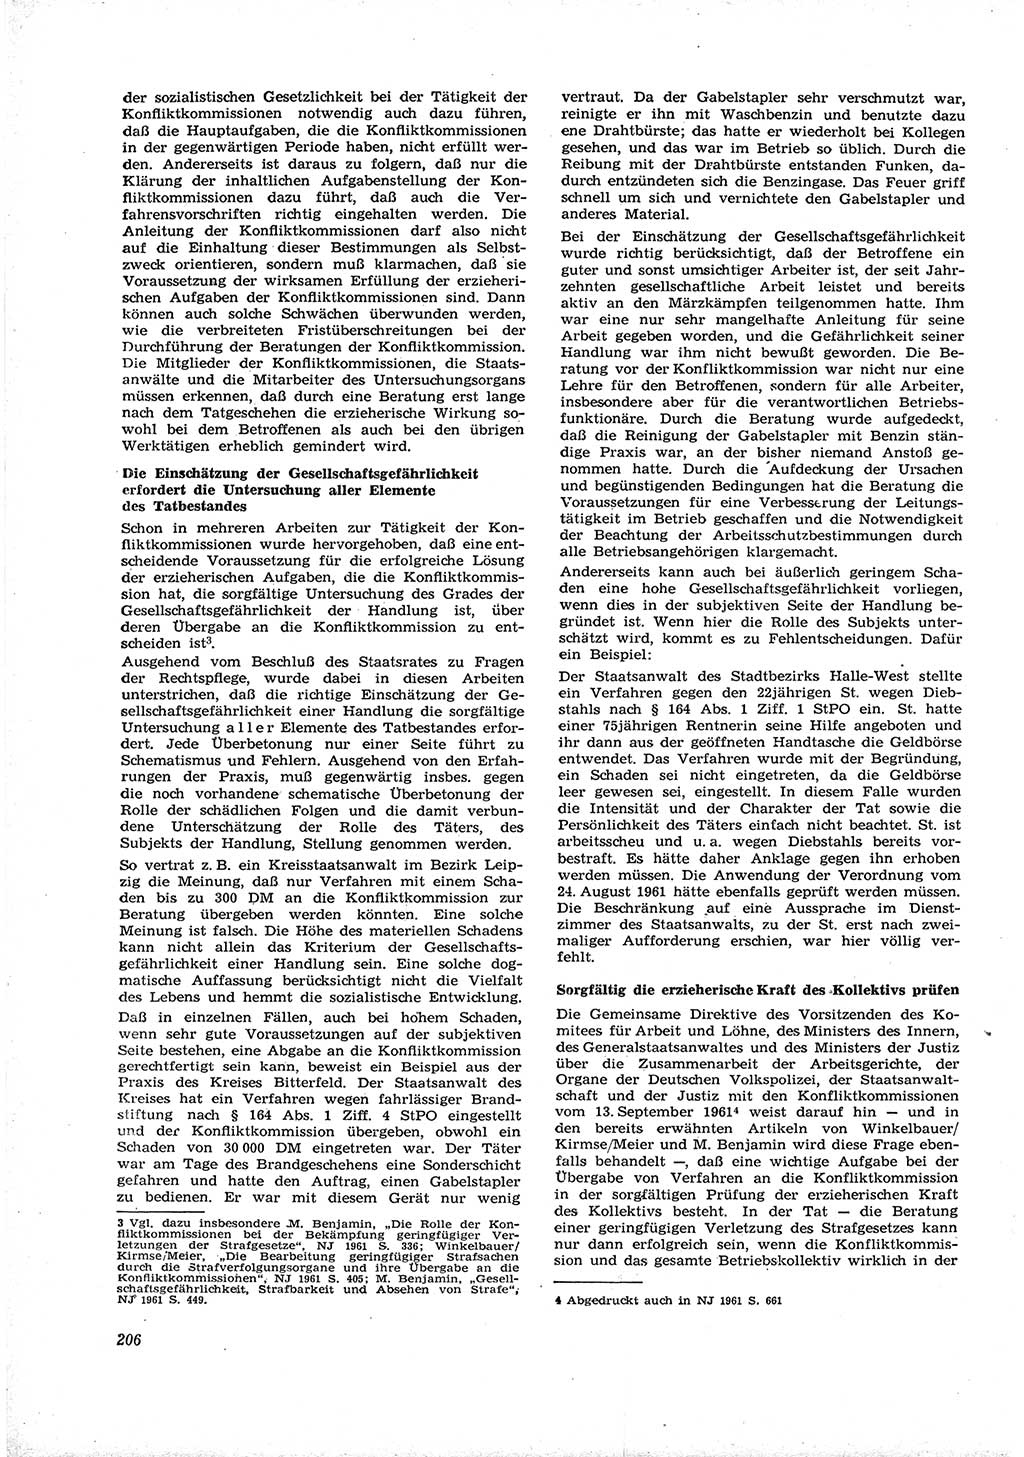 Neue Justiz (NJ), Zeitschrift für Recht und Rechtswissenschaft [Deutsche Demokratische Republik (DDR)], 16. Jahrgang 1962, Seite 206 (NJ DDR 1962, S. 206)